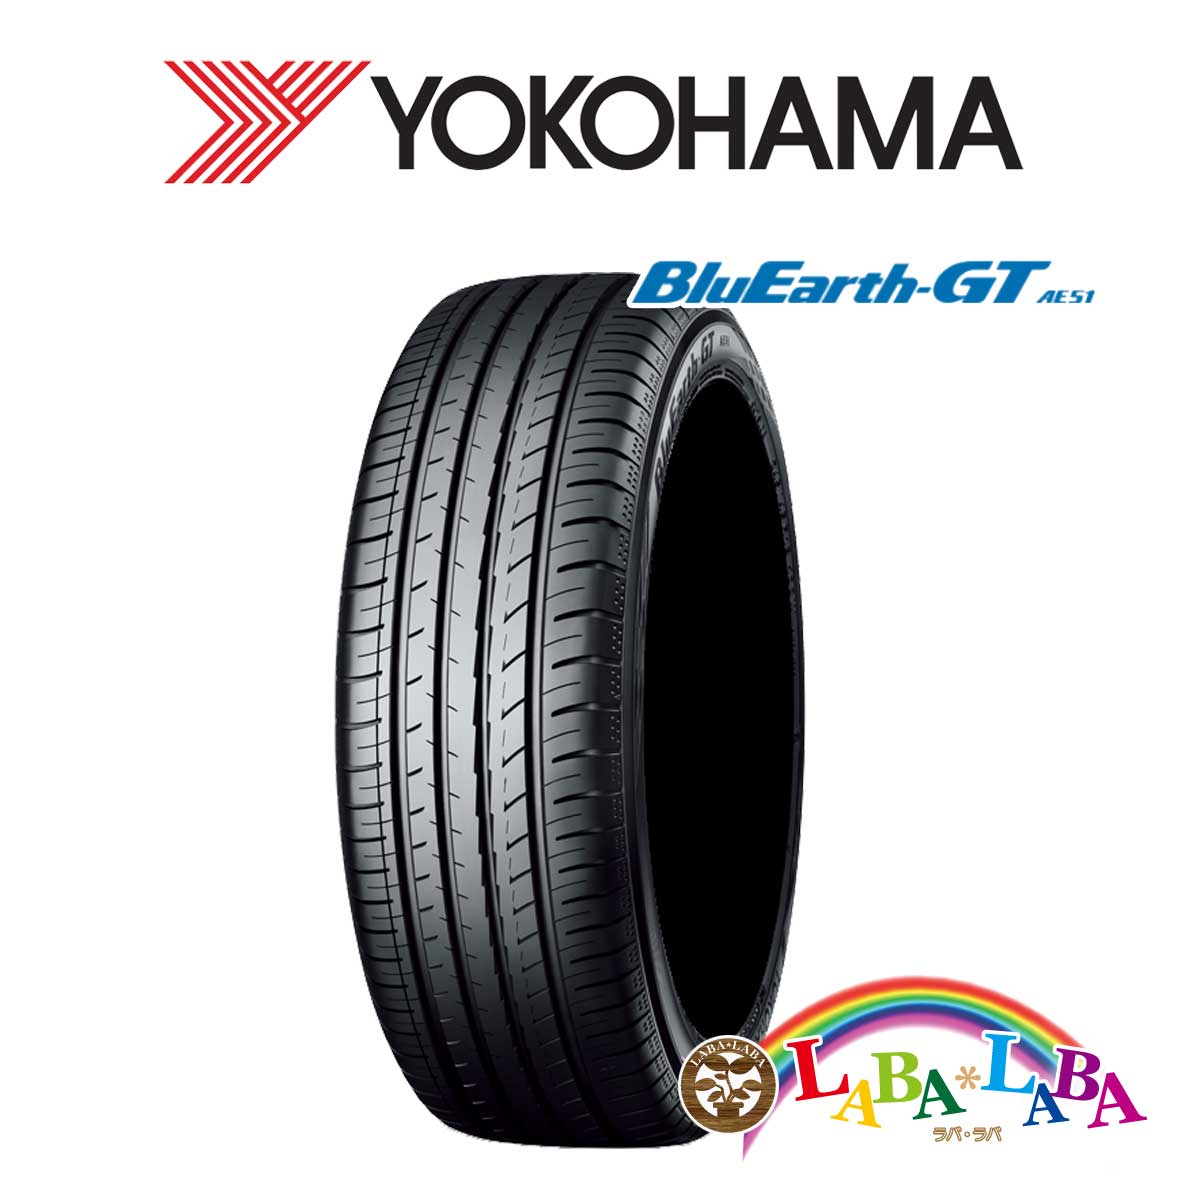 ２本以上送料無料 国産タイヤ サマータイヤ 新品 タイヤのみ YOKOHAMA ヨコハマ BluEarth-GT 65R15 ブルーアース 上品なスタイル 175 最上の品質な AE51 84H